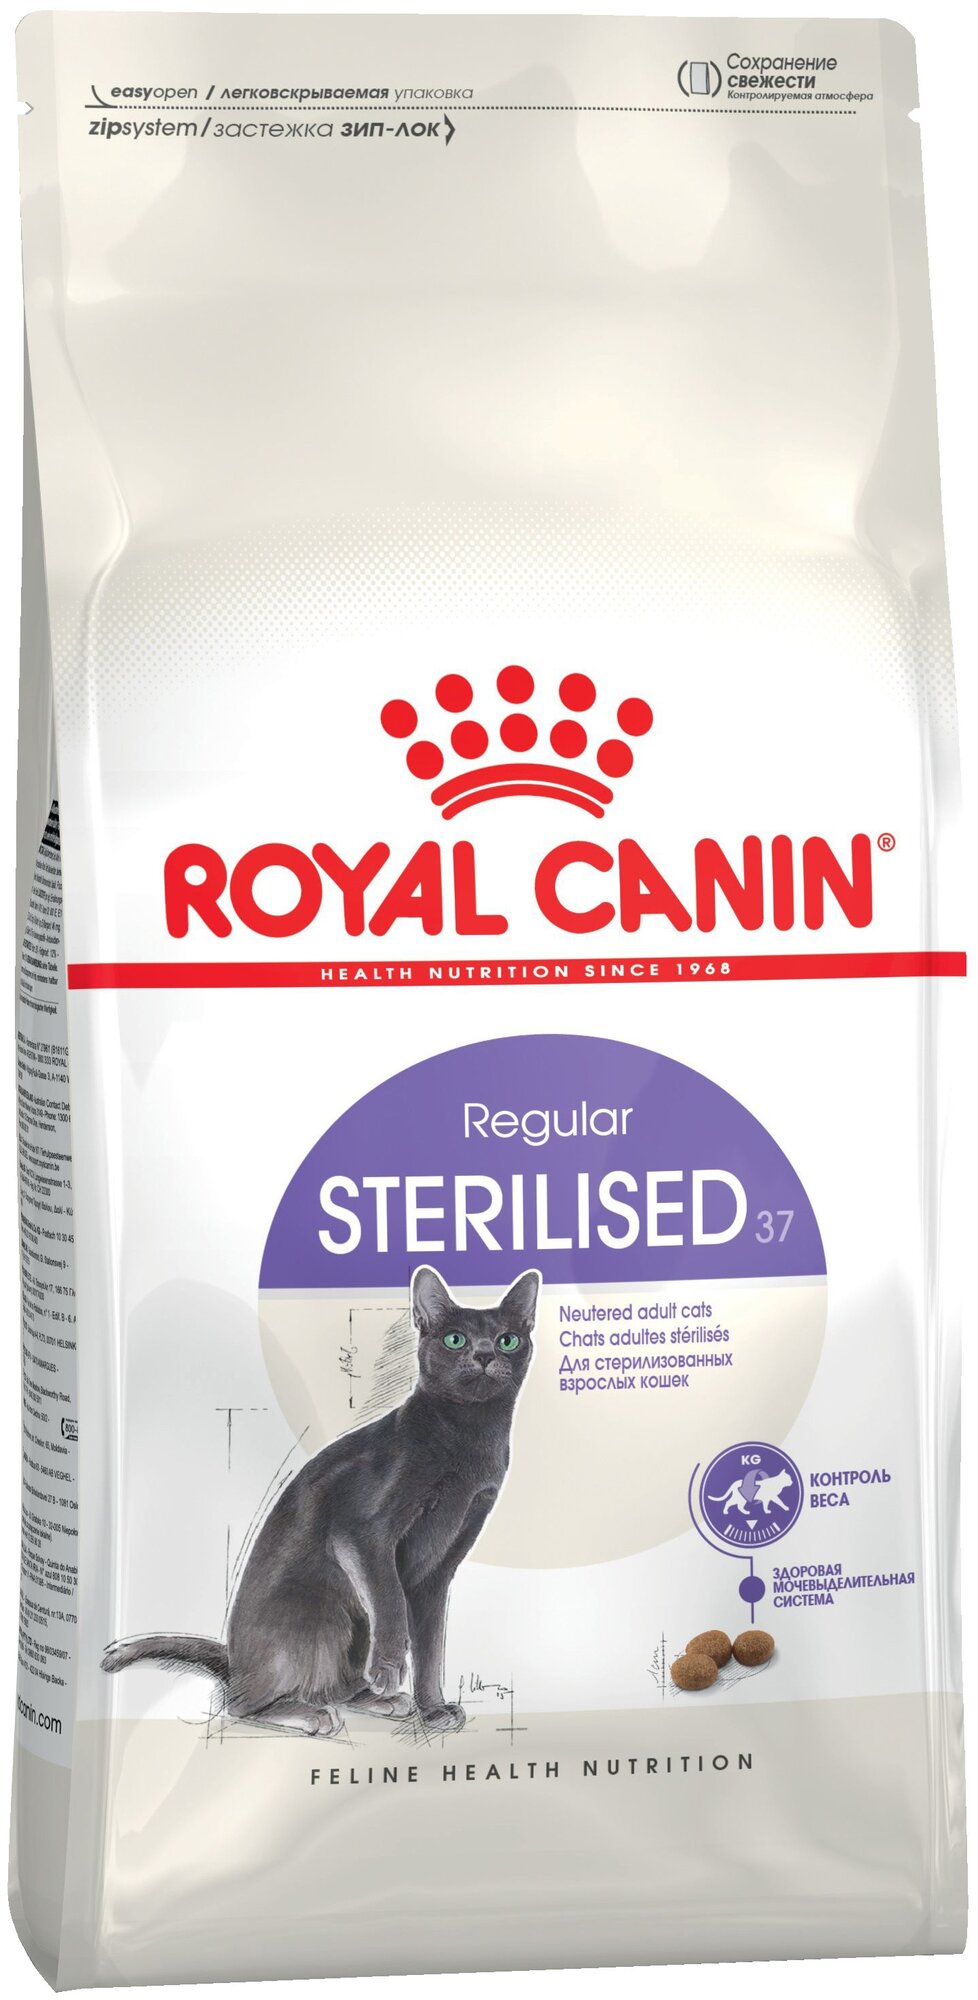 Royal Canin Sterilised для стерилизованных кошек и кастрированных котов Курица, 1,2 кг.